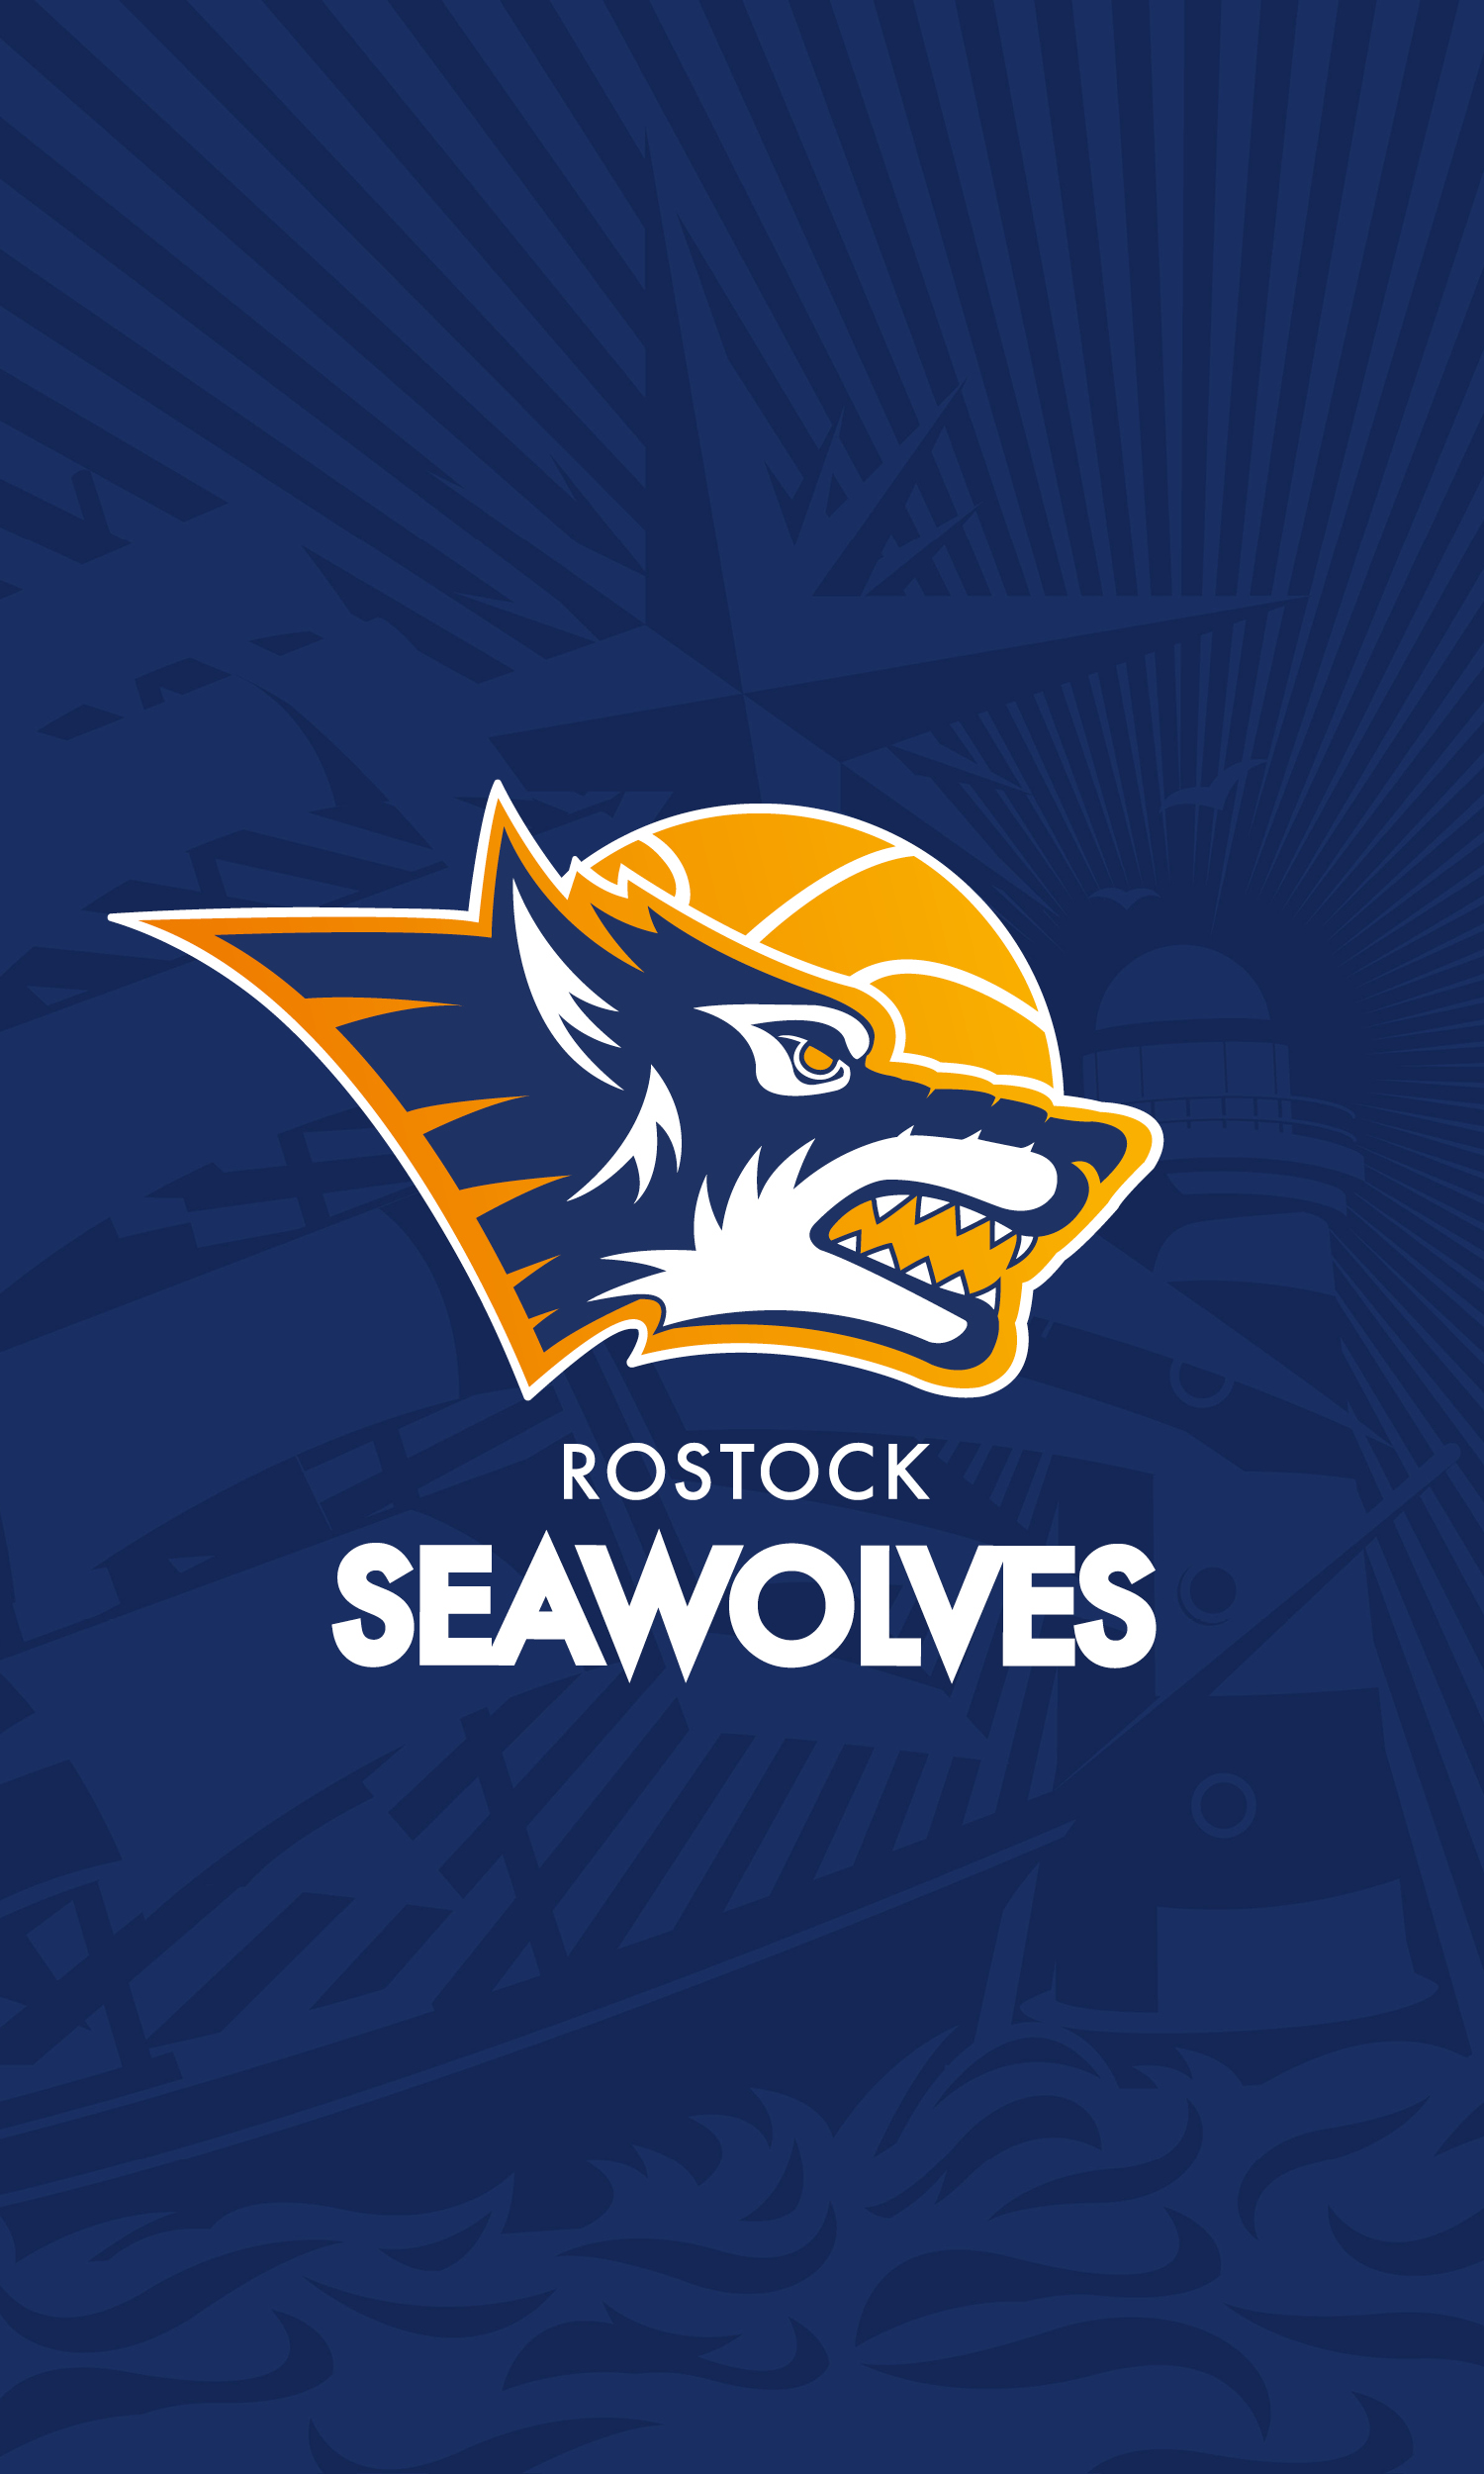 ROSTOCK SEAWOLVES BASKETBALL